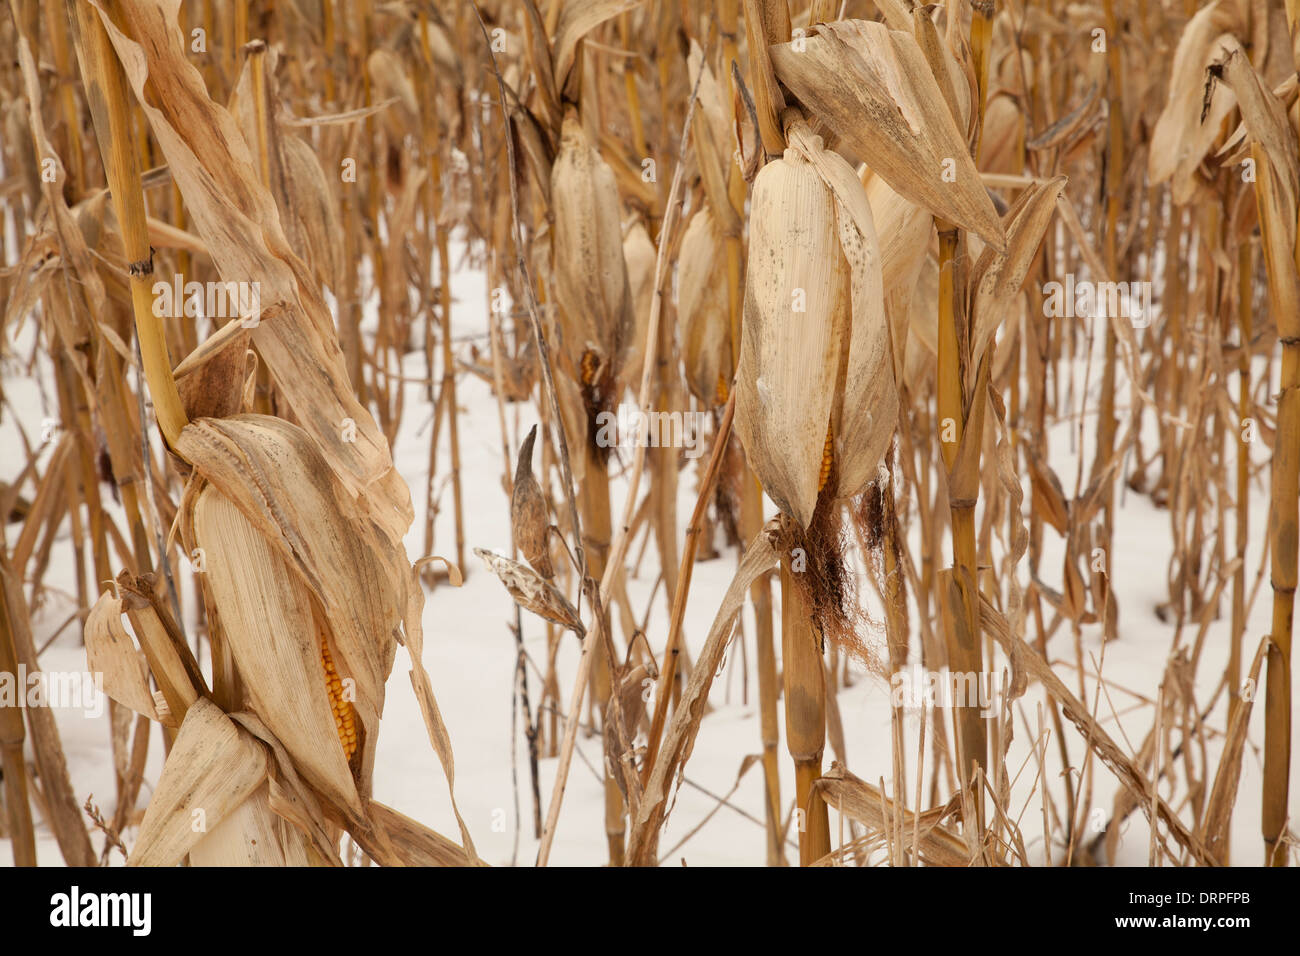 Ein Bereich der Mais steht noch im Winterschnee in den Berkshires in Massachusetts. Stockfoto